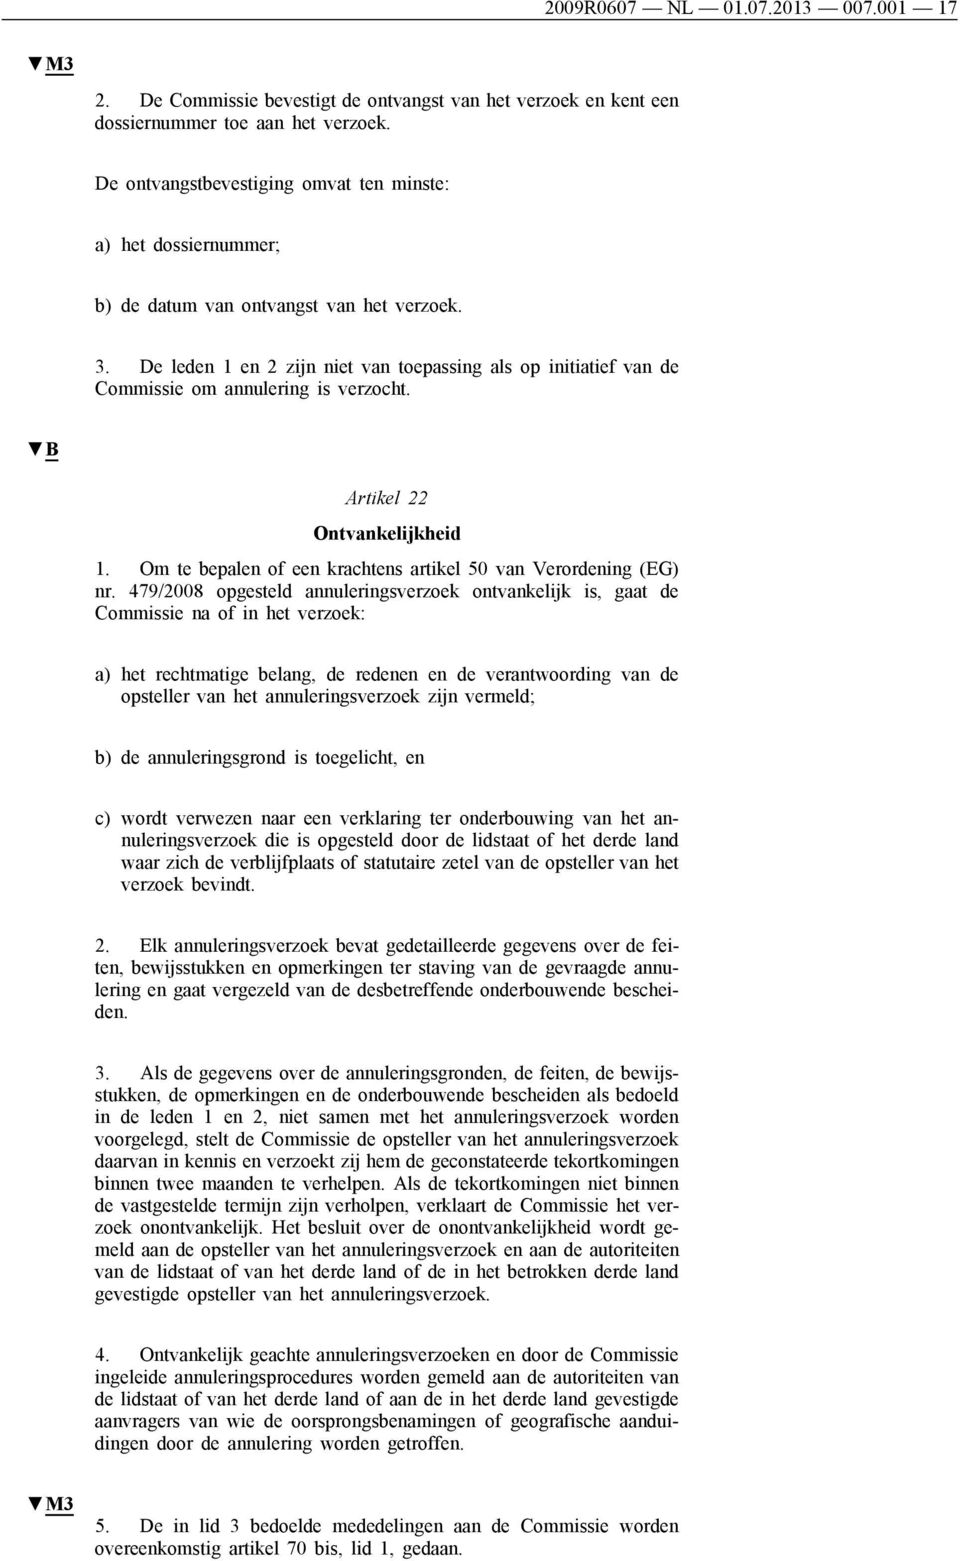 De leden 1 en 2 zijn niet van toepassing als op initiatief van de Commissie om annulering is verzocht. Artikel 22 Ontvankelijkheid 1. Om te bepalen of een krachtens artikel 50 van Verordening (EG) nr.